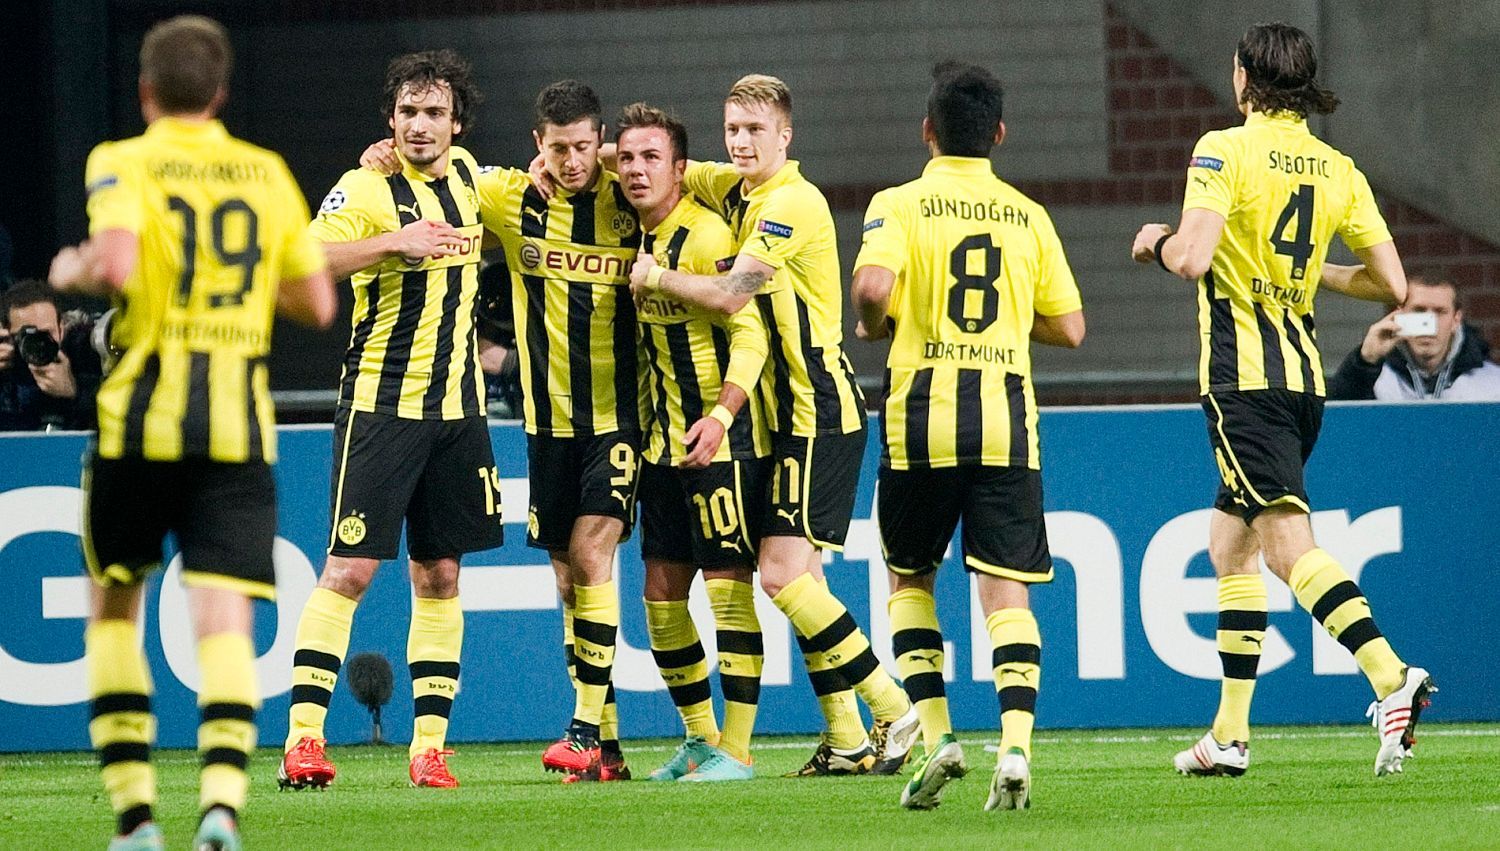 Fotbalisté Borussia Dortmund slaví gól v utkání Ligy mistrů 2012/13 proti Ajaxu Amsterdam.